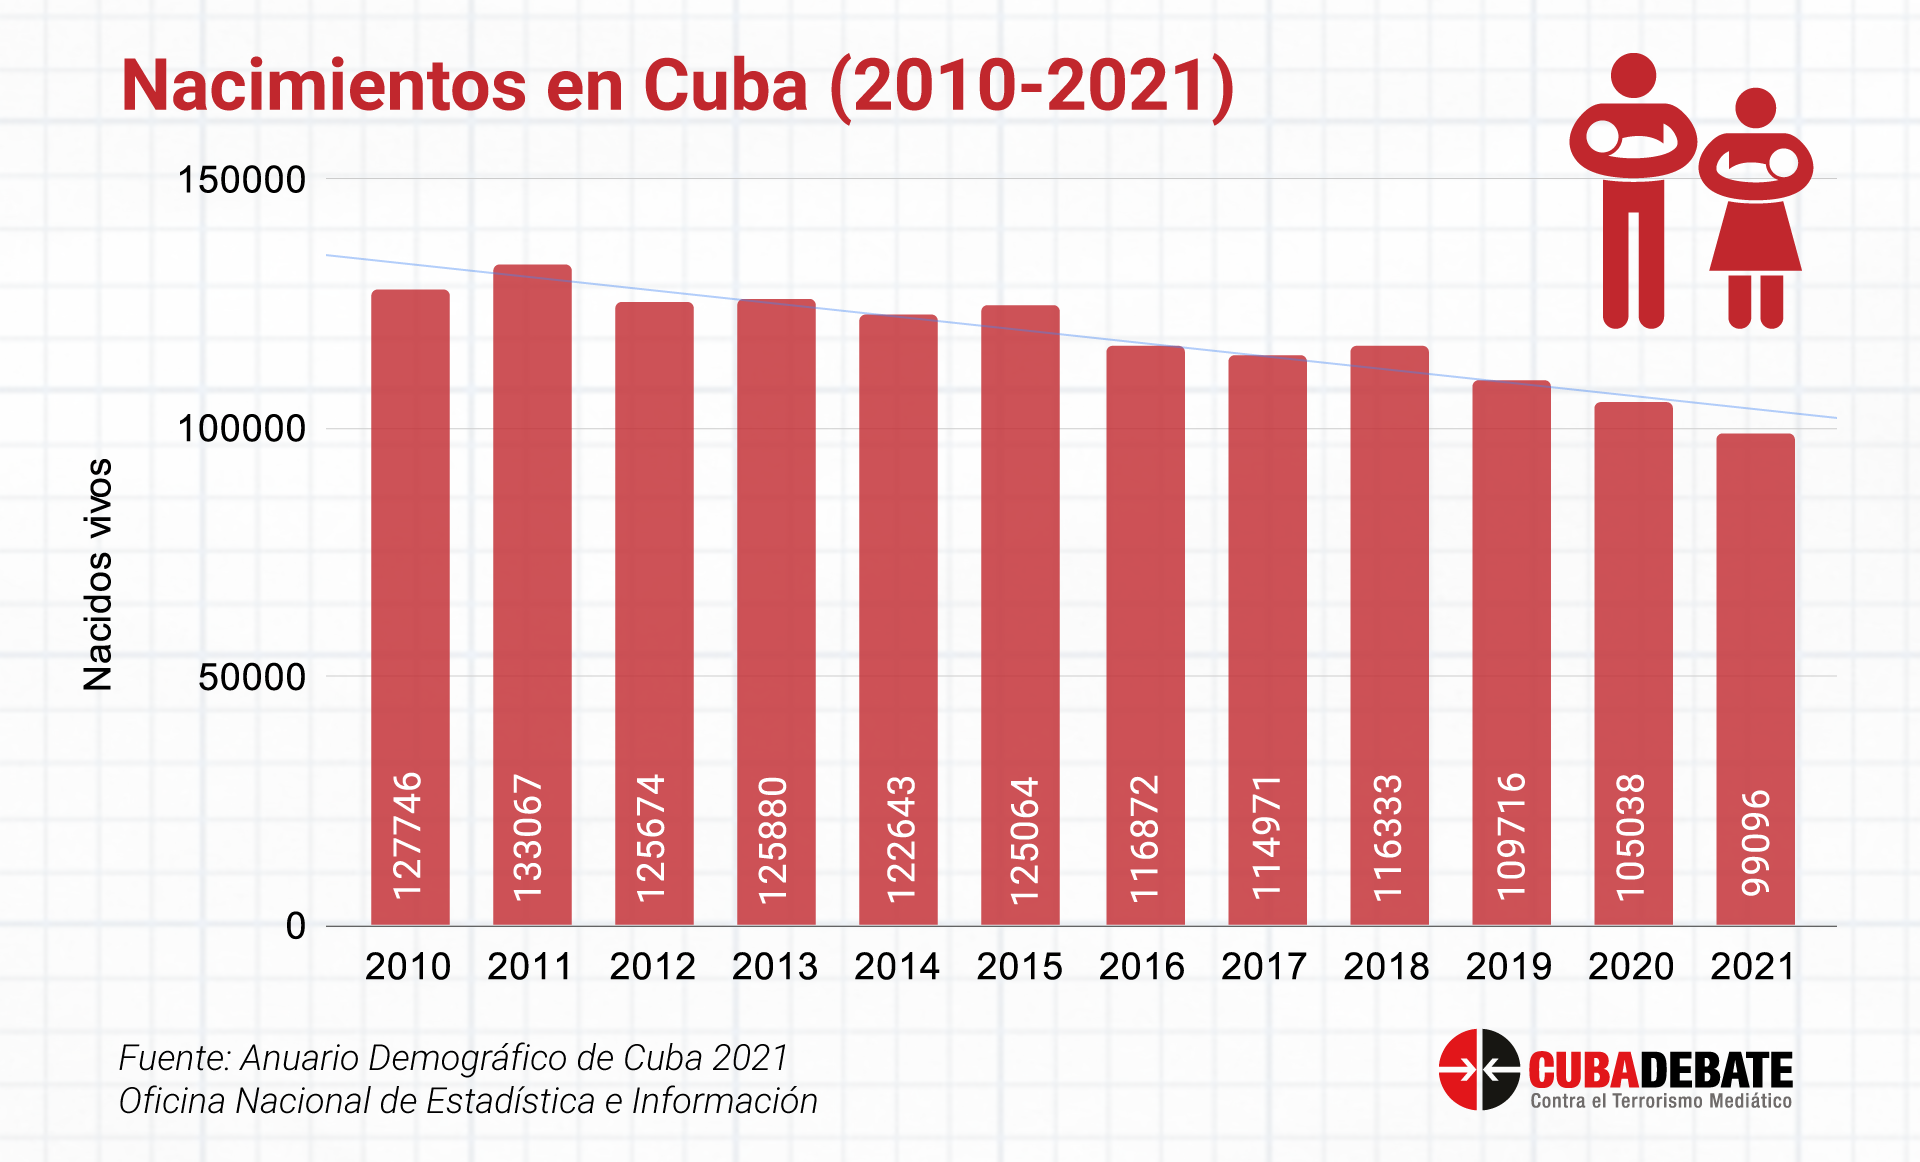 ¿Qué esperanza de vida tiene Cuba?